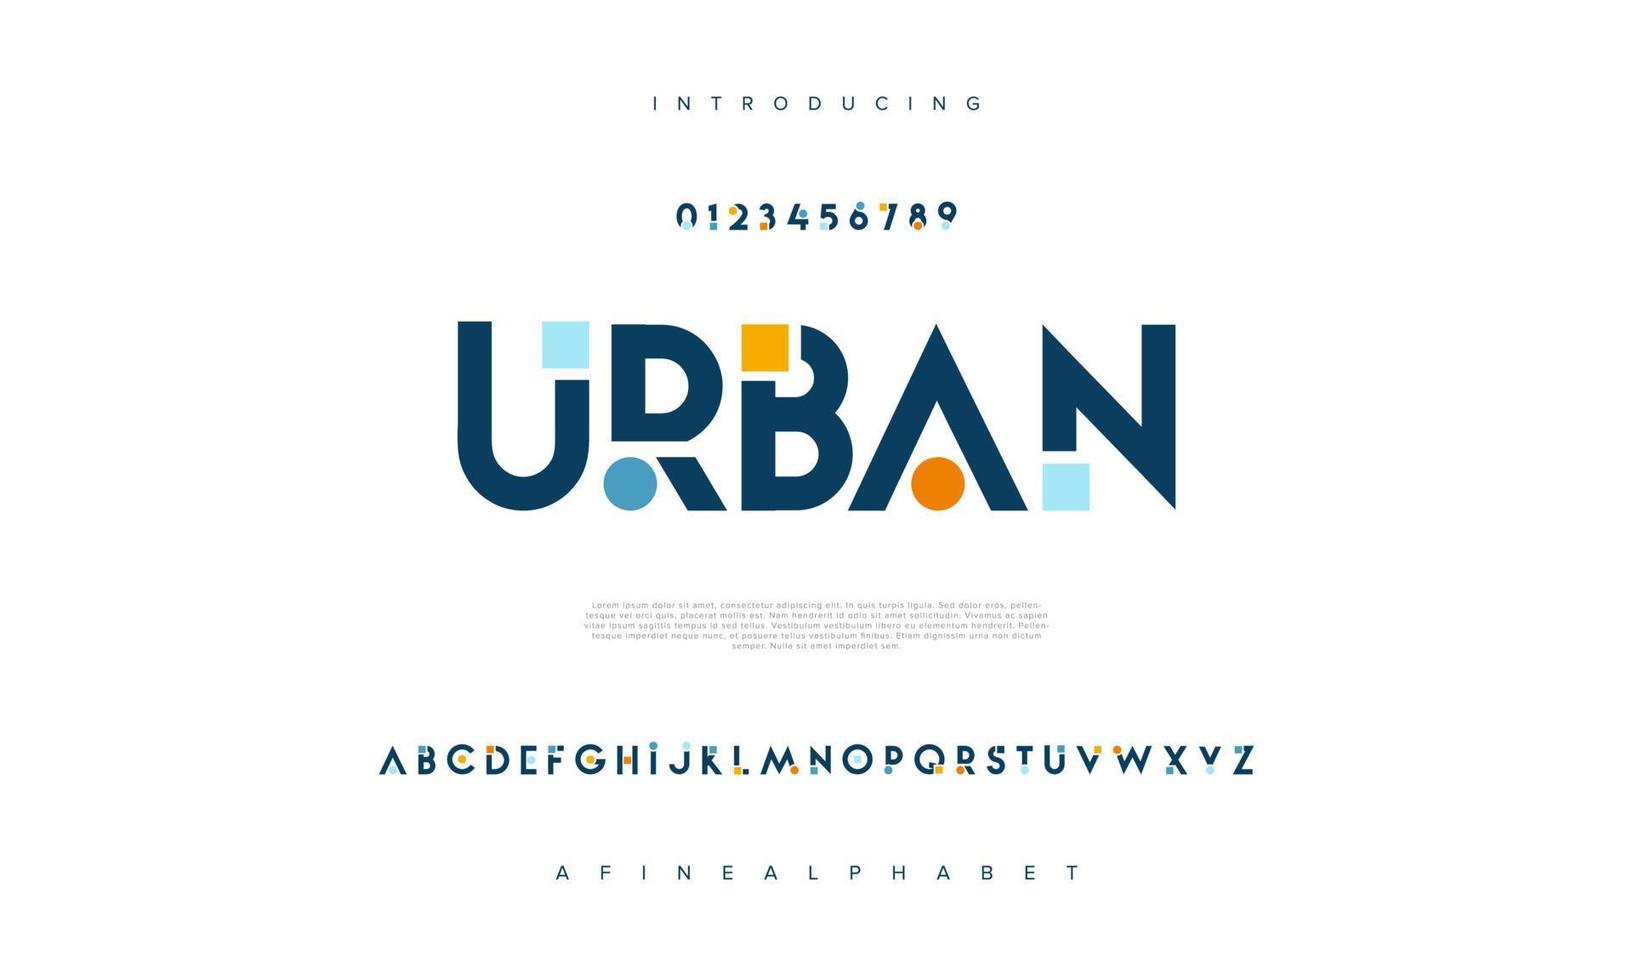 stedelijk abstract digitaal technologie logo doopvont alfabet. minimaal modern stedelijk fonts voor logo, merk enz. typografie lettertype hoofdletters kleine letters en nummer. vector illustratie